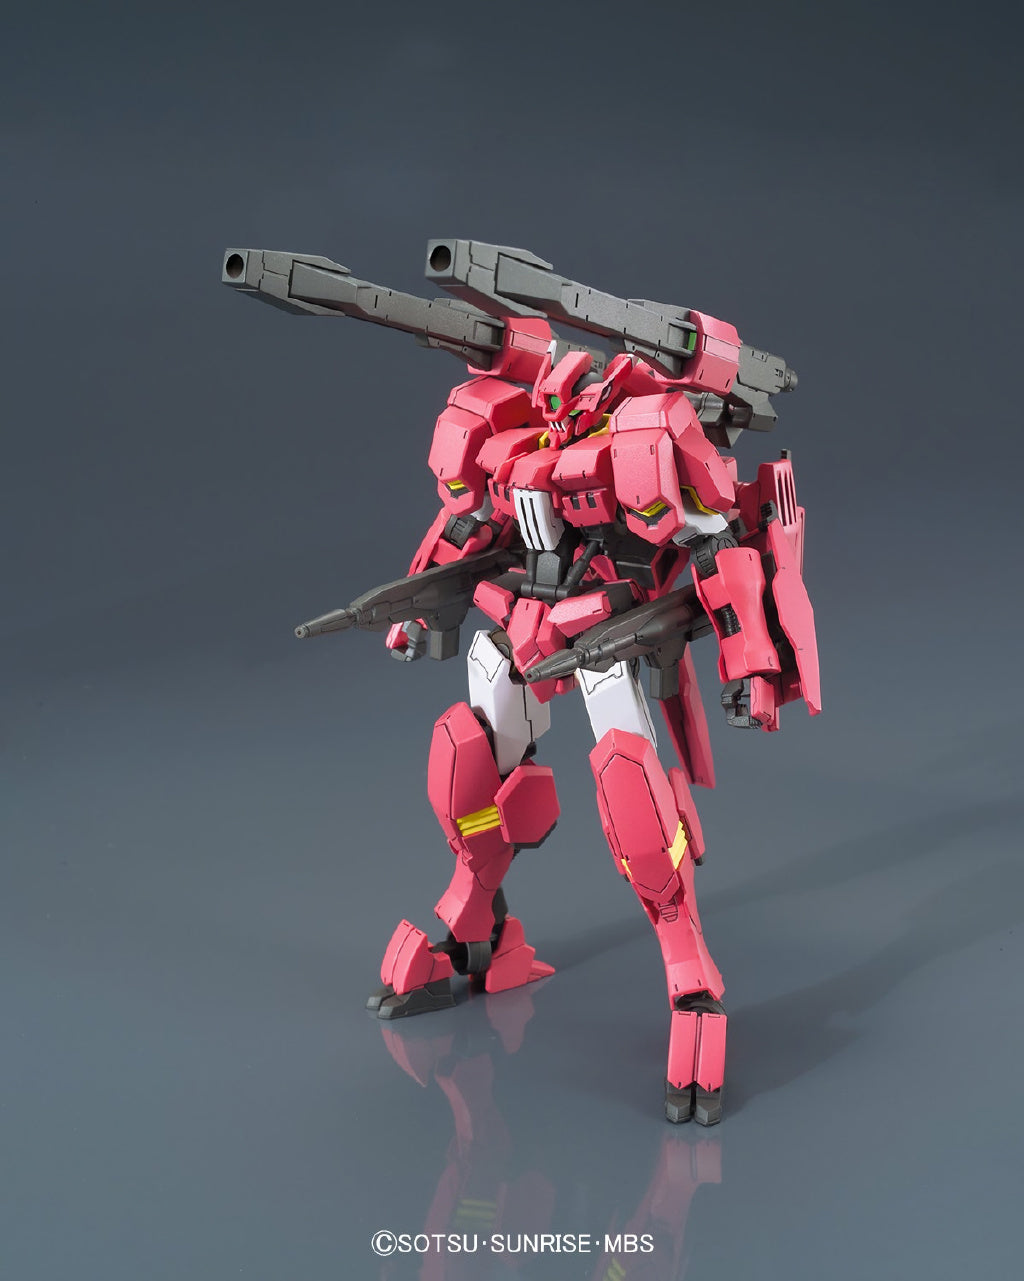 HG 028 Gundam Flauros